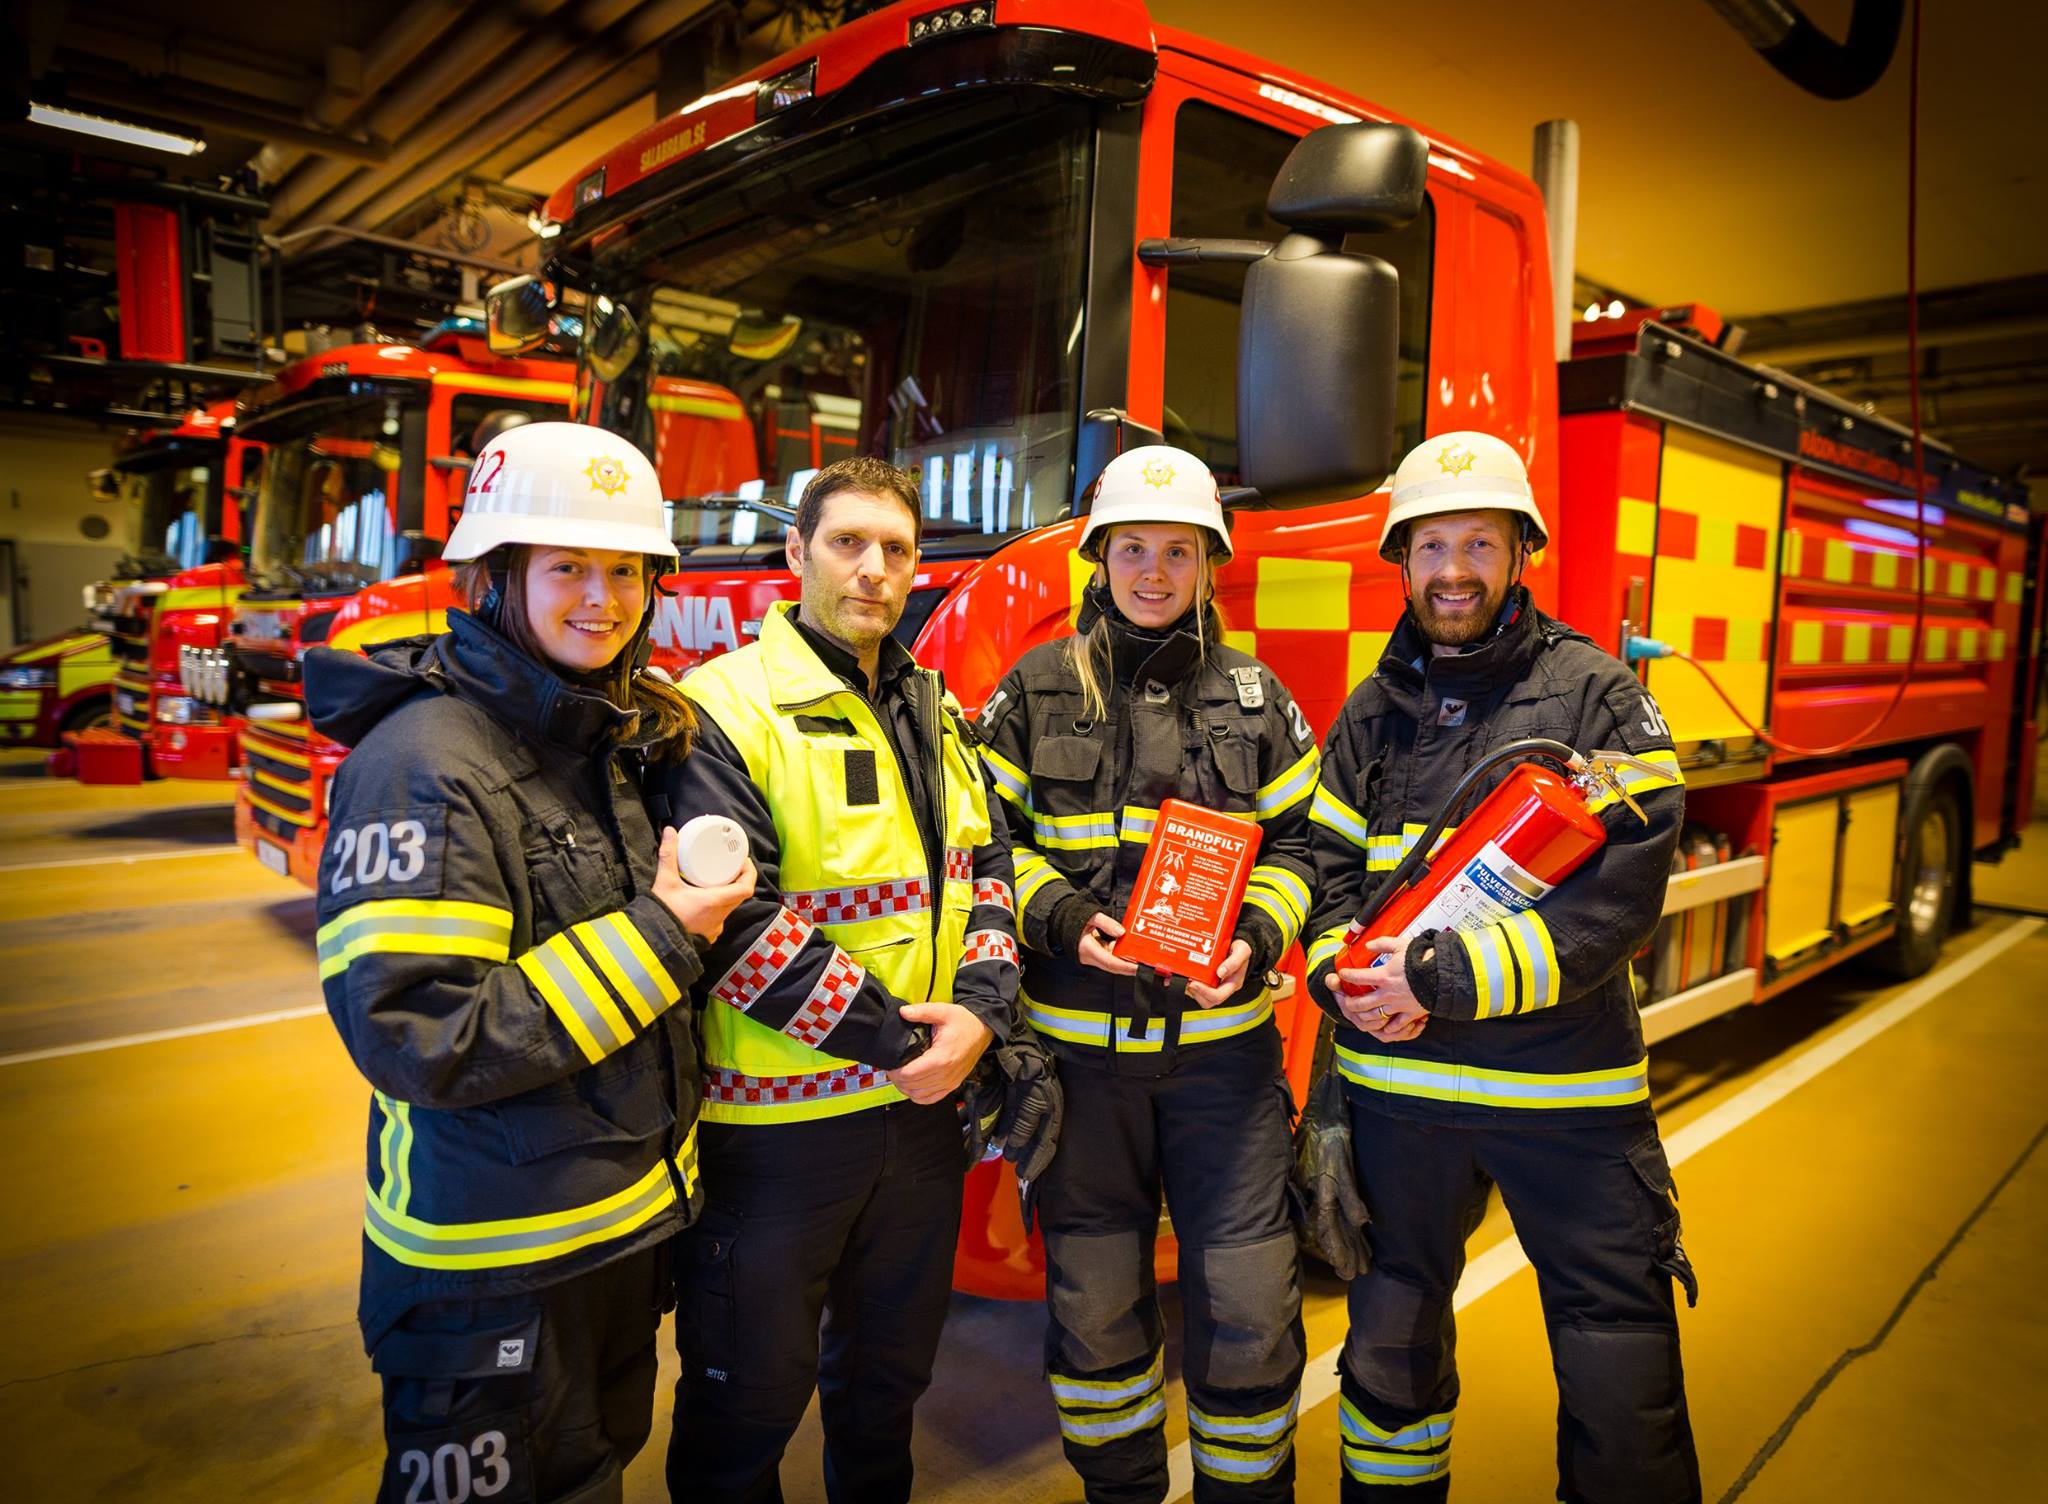 Syntolkning av bild: Fyra brandmän som visar brandskyddsutrustning